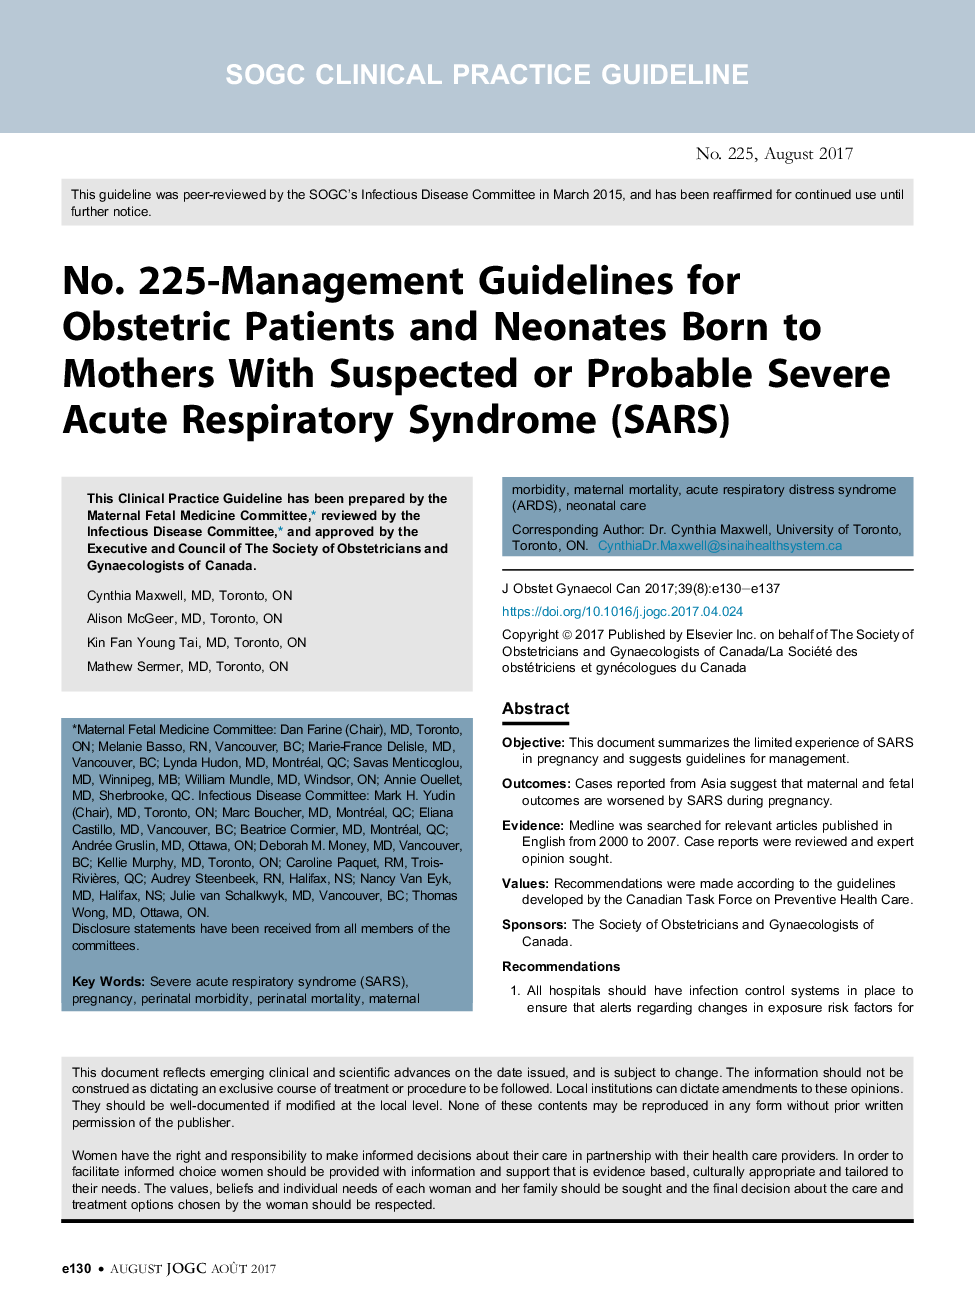 شماره 225- دستورالعمل های مدیریتی برای بیماران مبتلا به زایمان و نوزادان متولد شده در مادران مبتلا به سندرم حاد تنفسی حاد و یا احتمالا سارس 